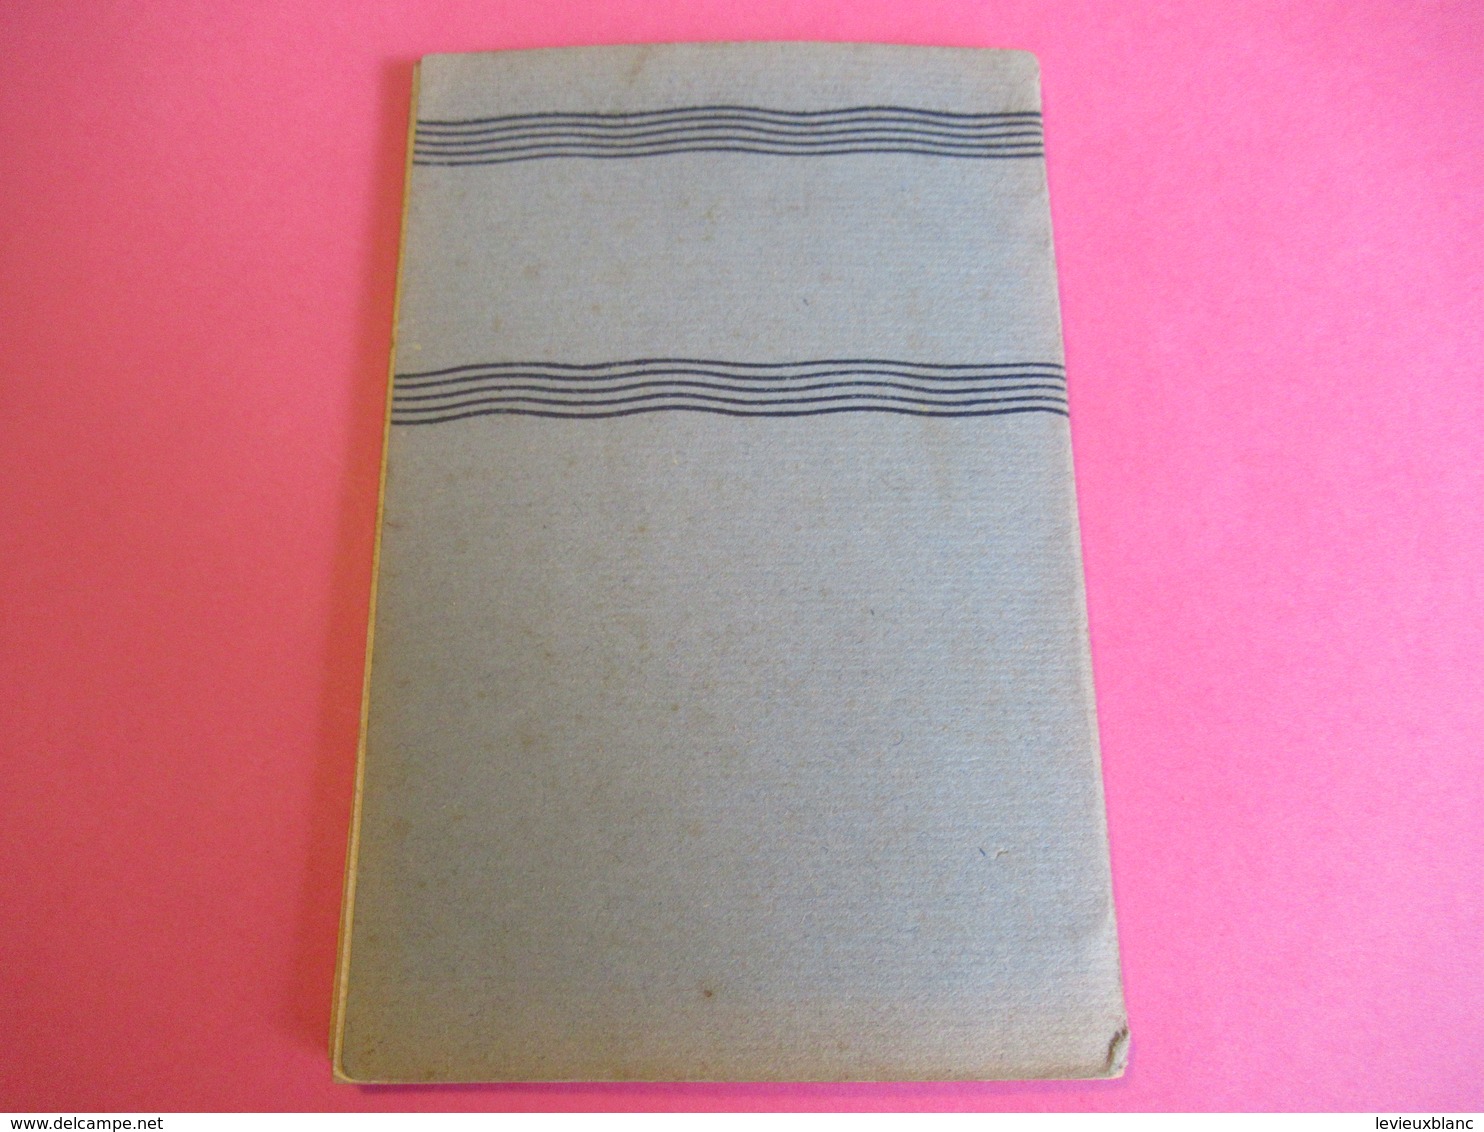 Les Guides Bleus Illustrés/BRUXELLES/Librairie Hachette et Cie/1931       PGC271